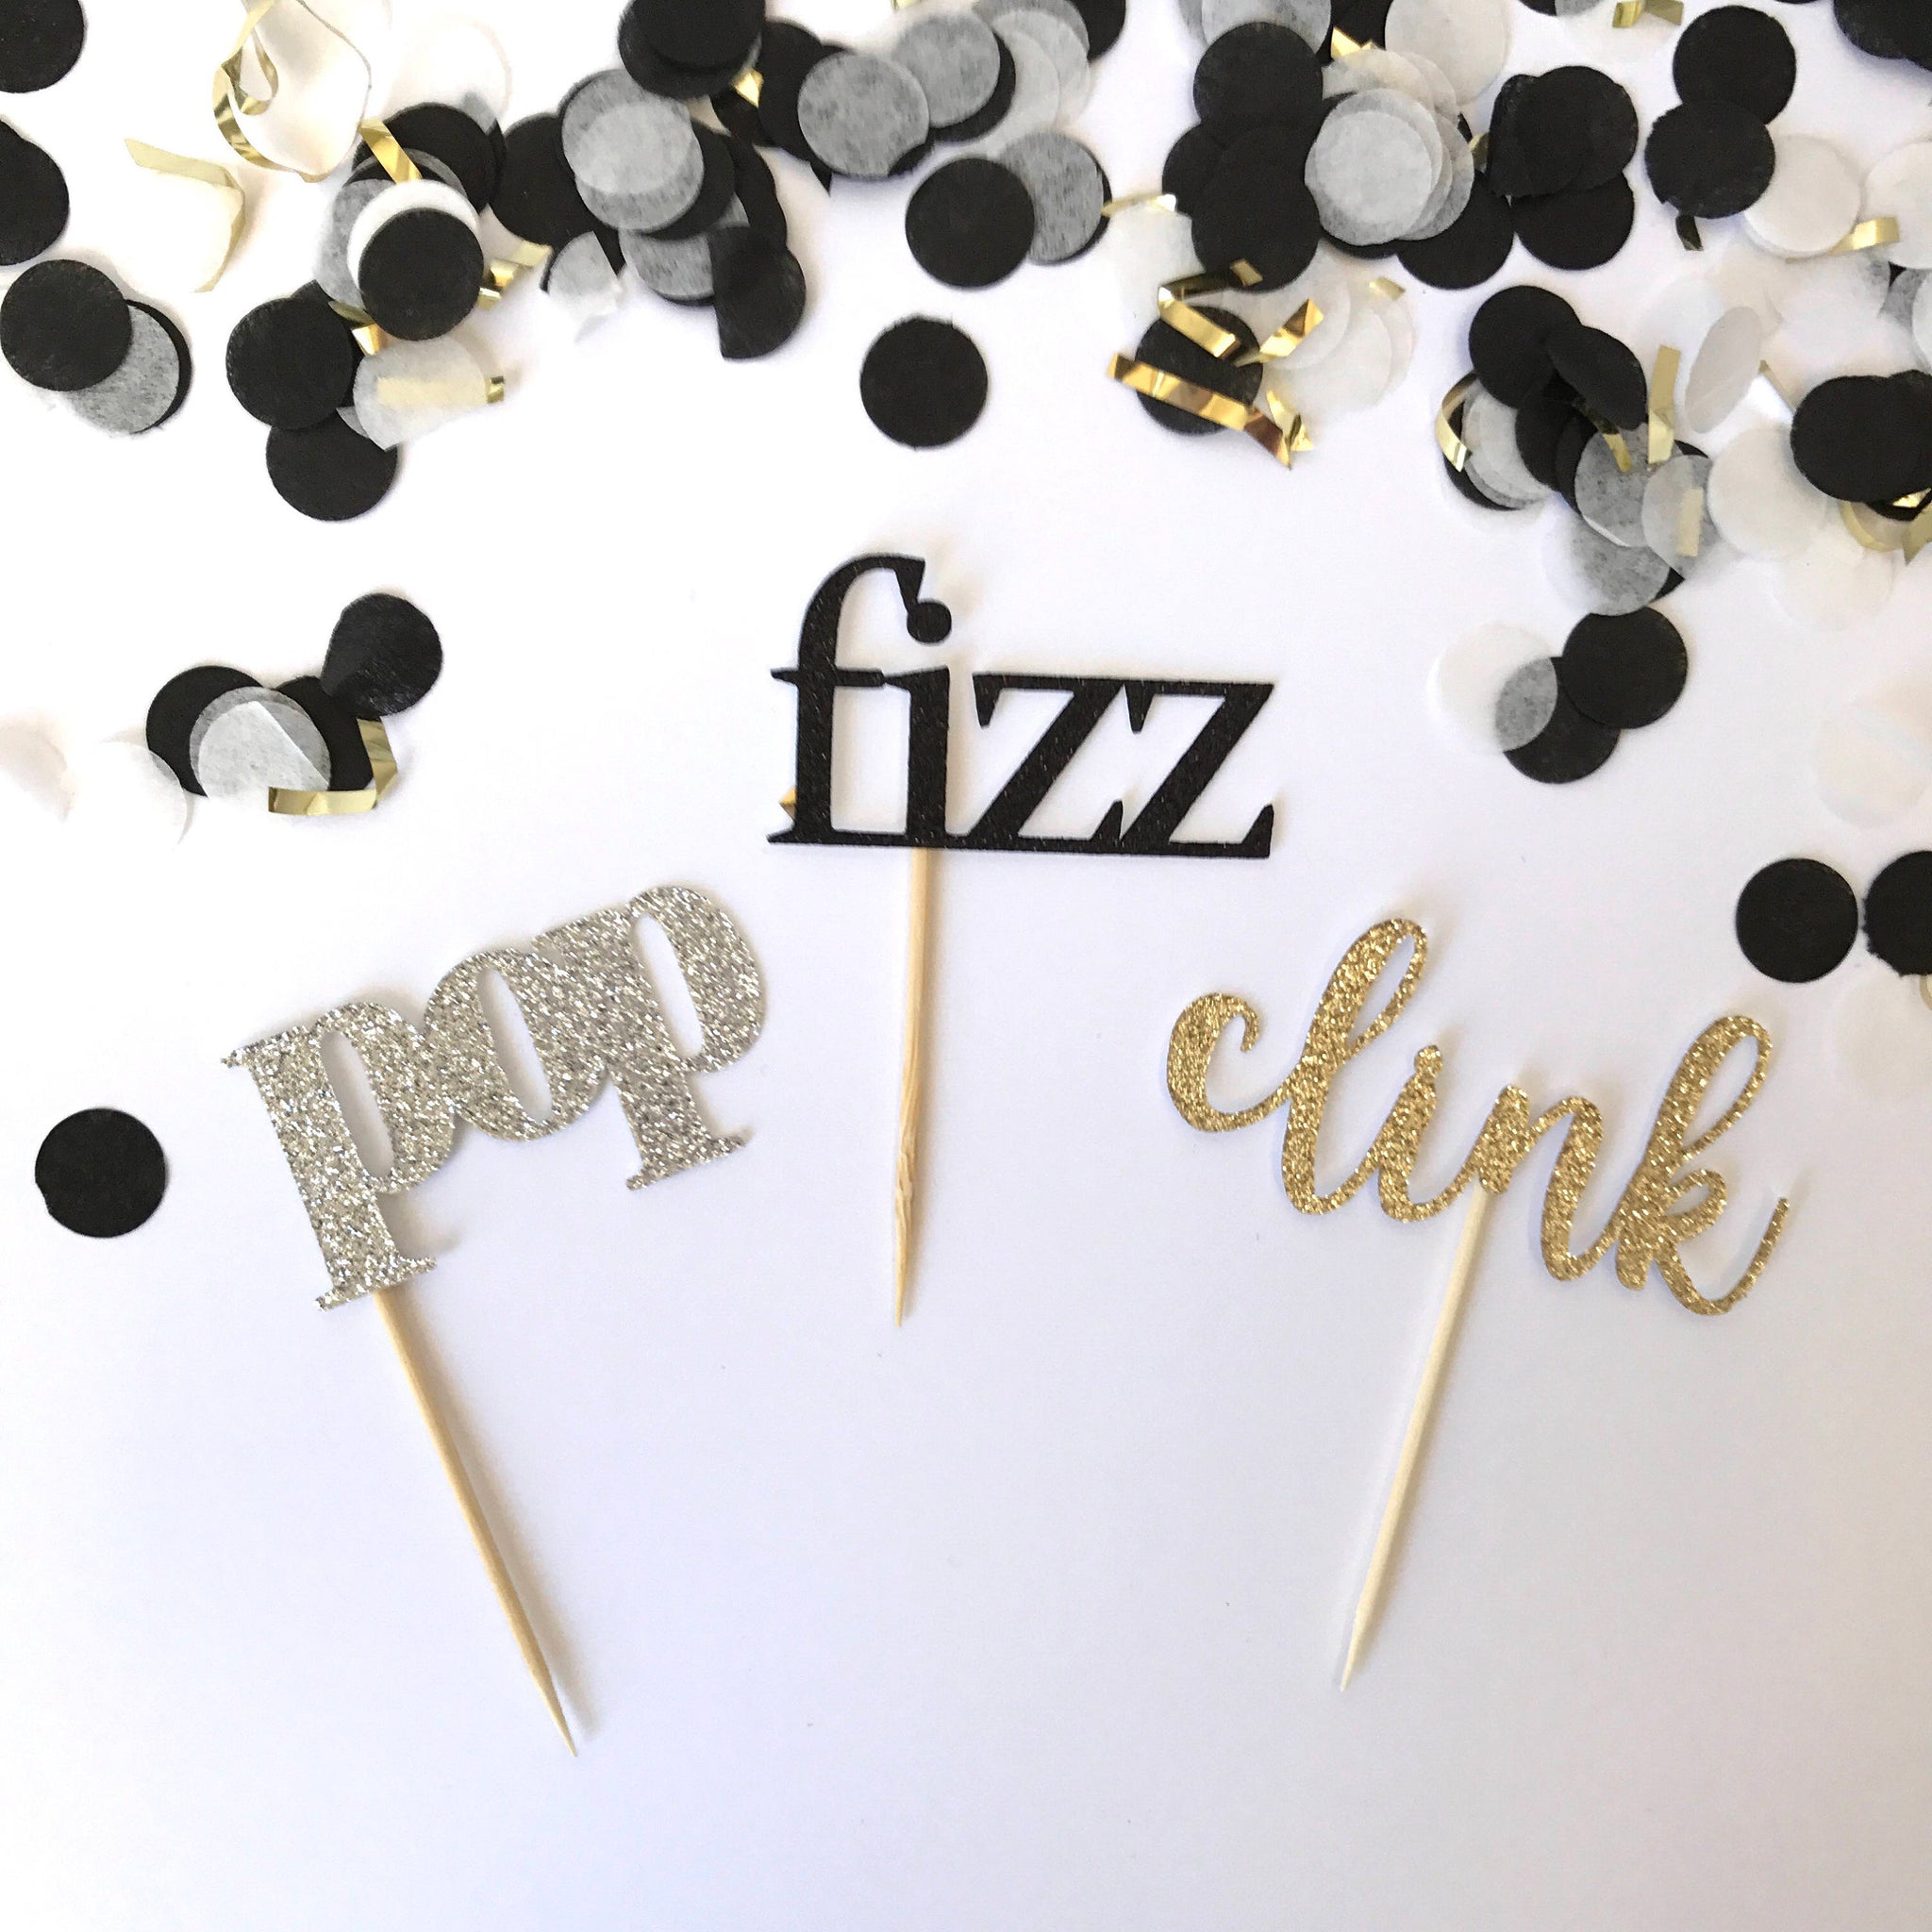 Pop Fizz Clink Cupcake Toppers - glitterpaperscissors